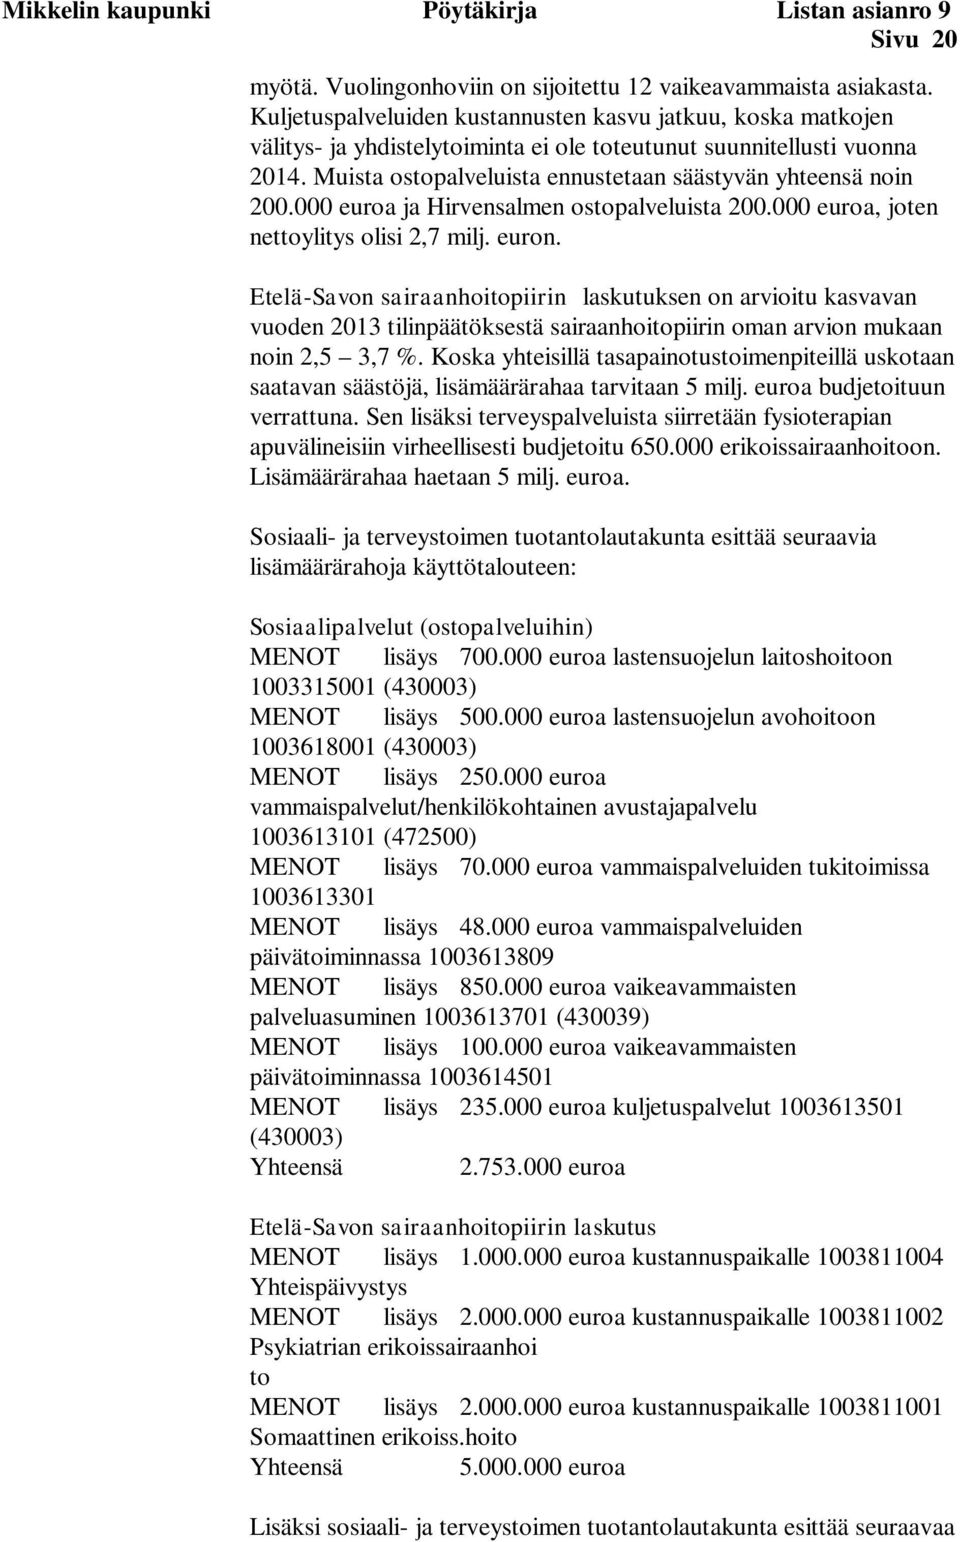 Muista ostopalveluista ennustetaan säästyvän yhteensä noin 200.000 euroa ja Hirvensalmen ostopalveluista 200.000 euroa, joten nettoylitys olisi 2,7 milj. euron.